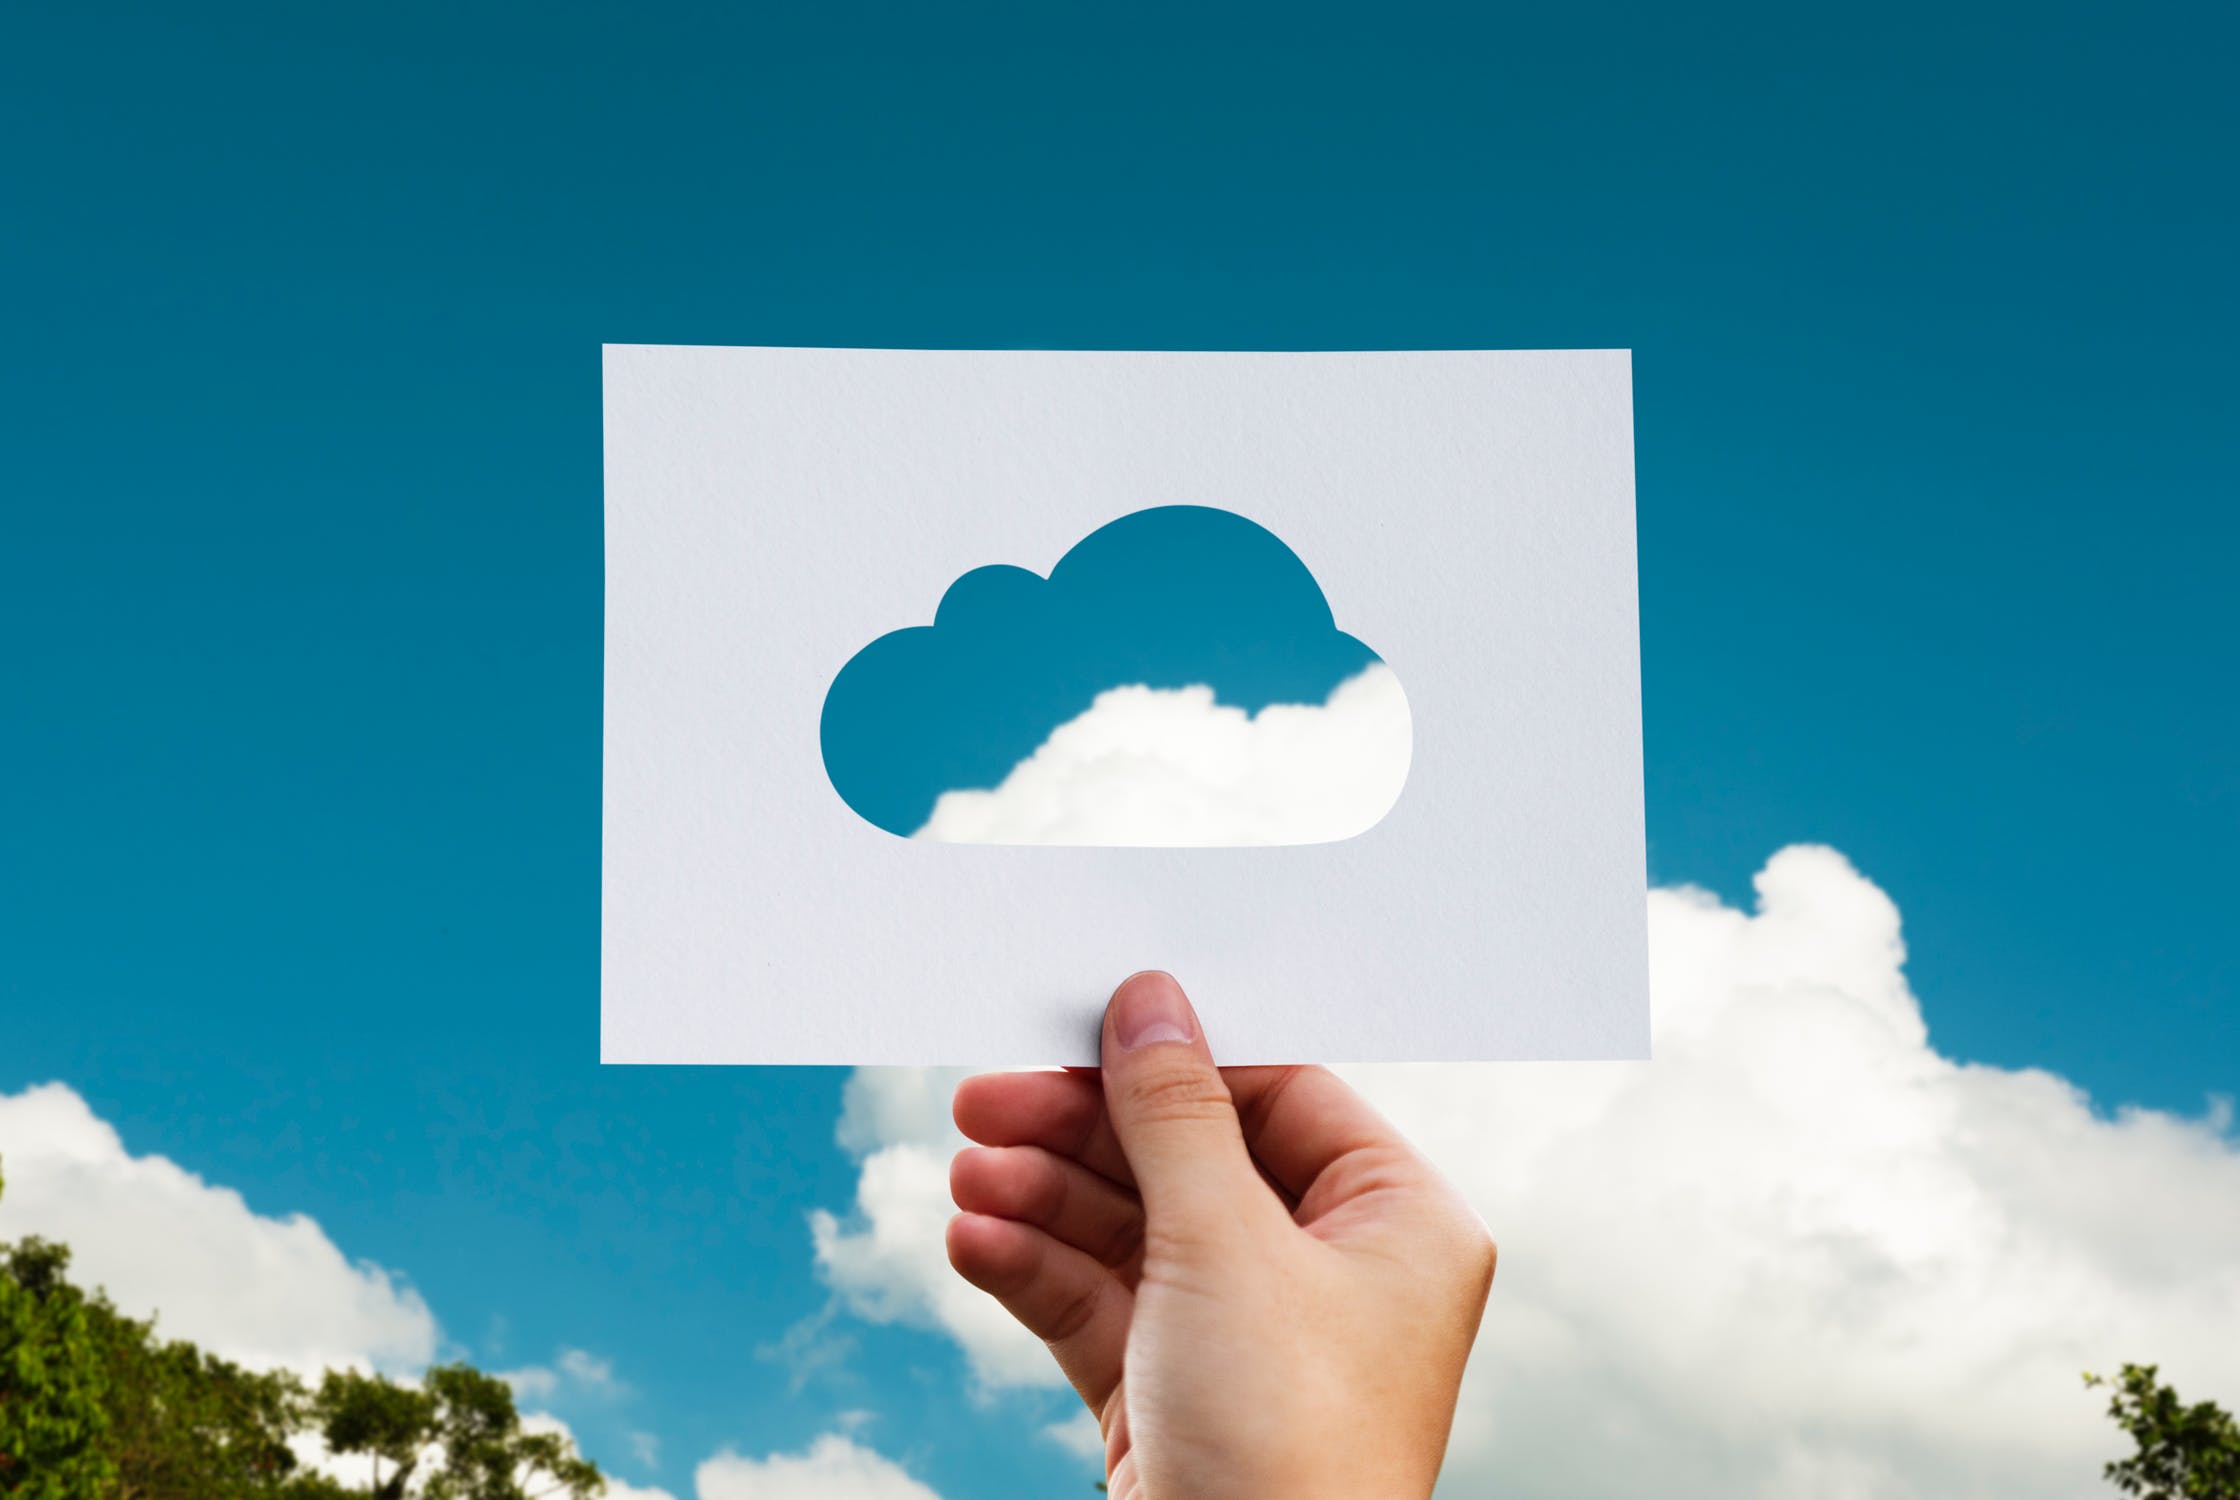 Korzyści biznesowe z przeniesienia danych do chmury